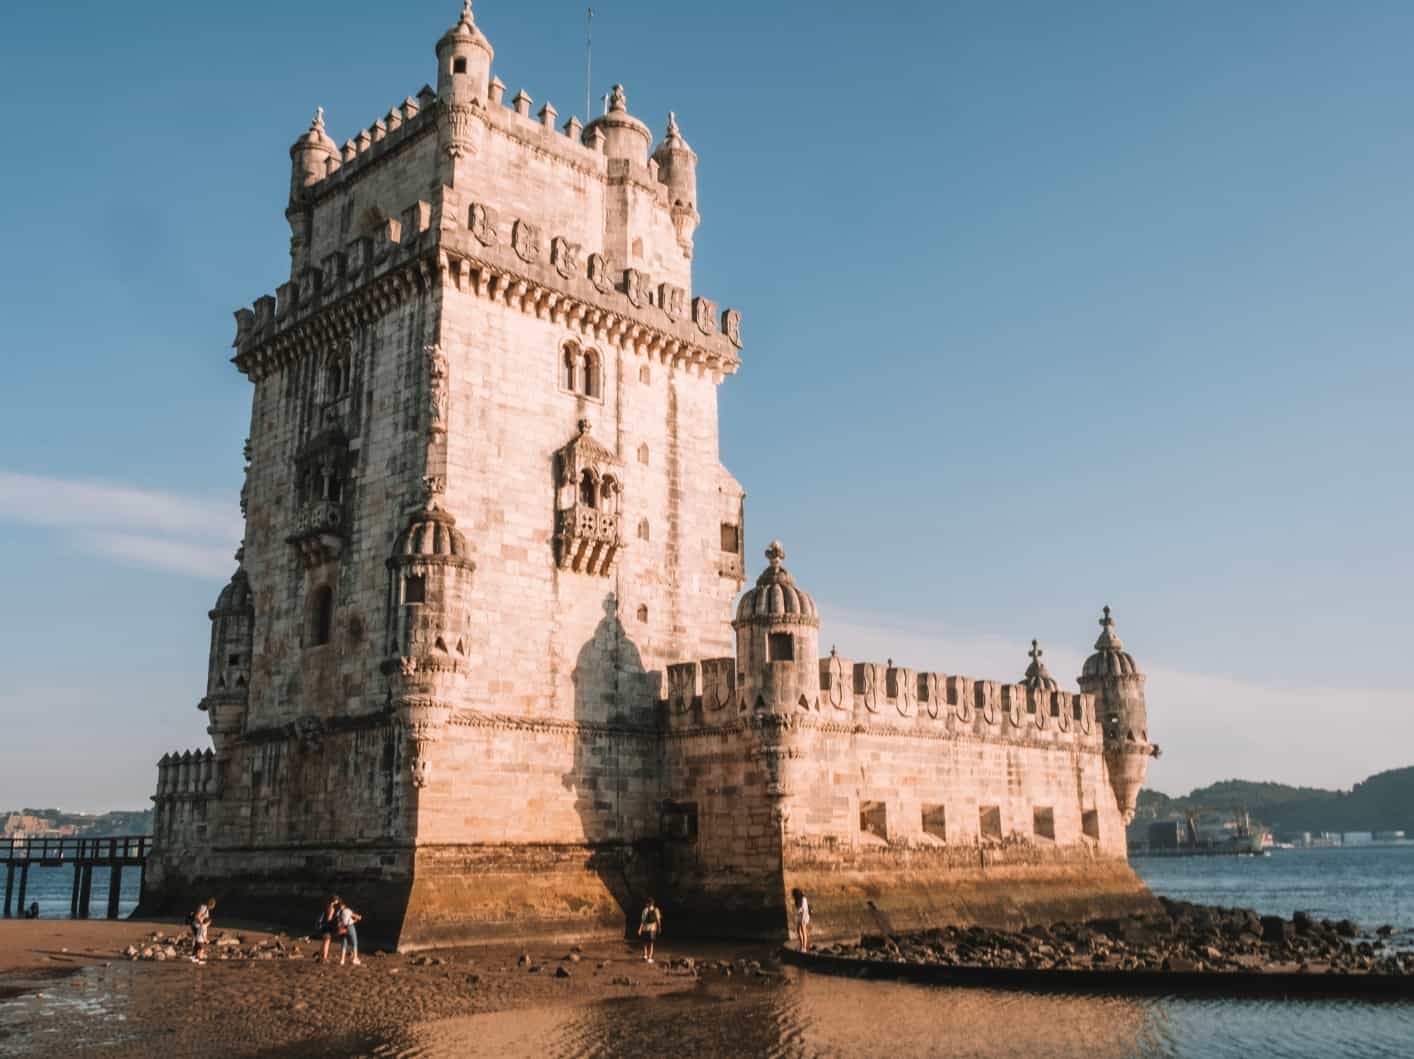 The famous Torre de Belém in Lisbon. 